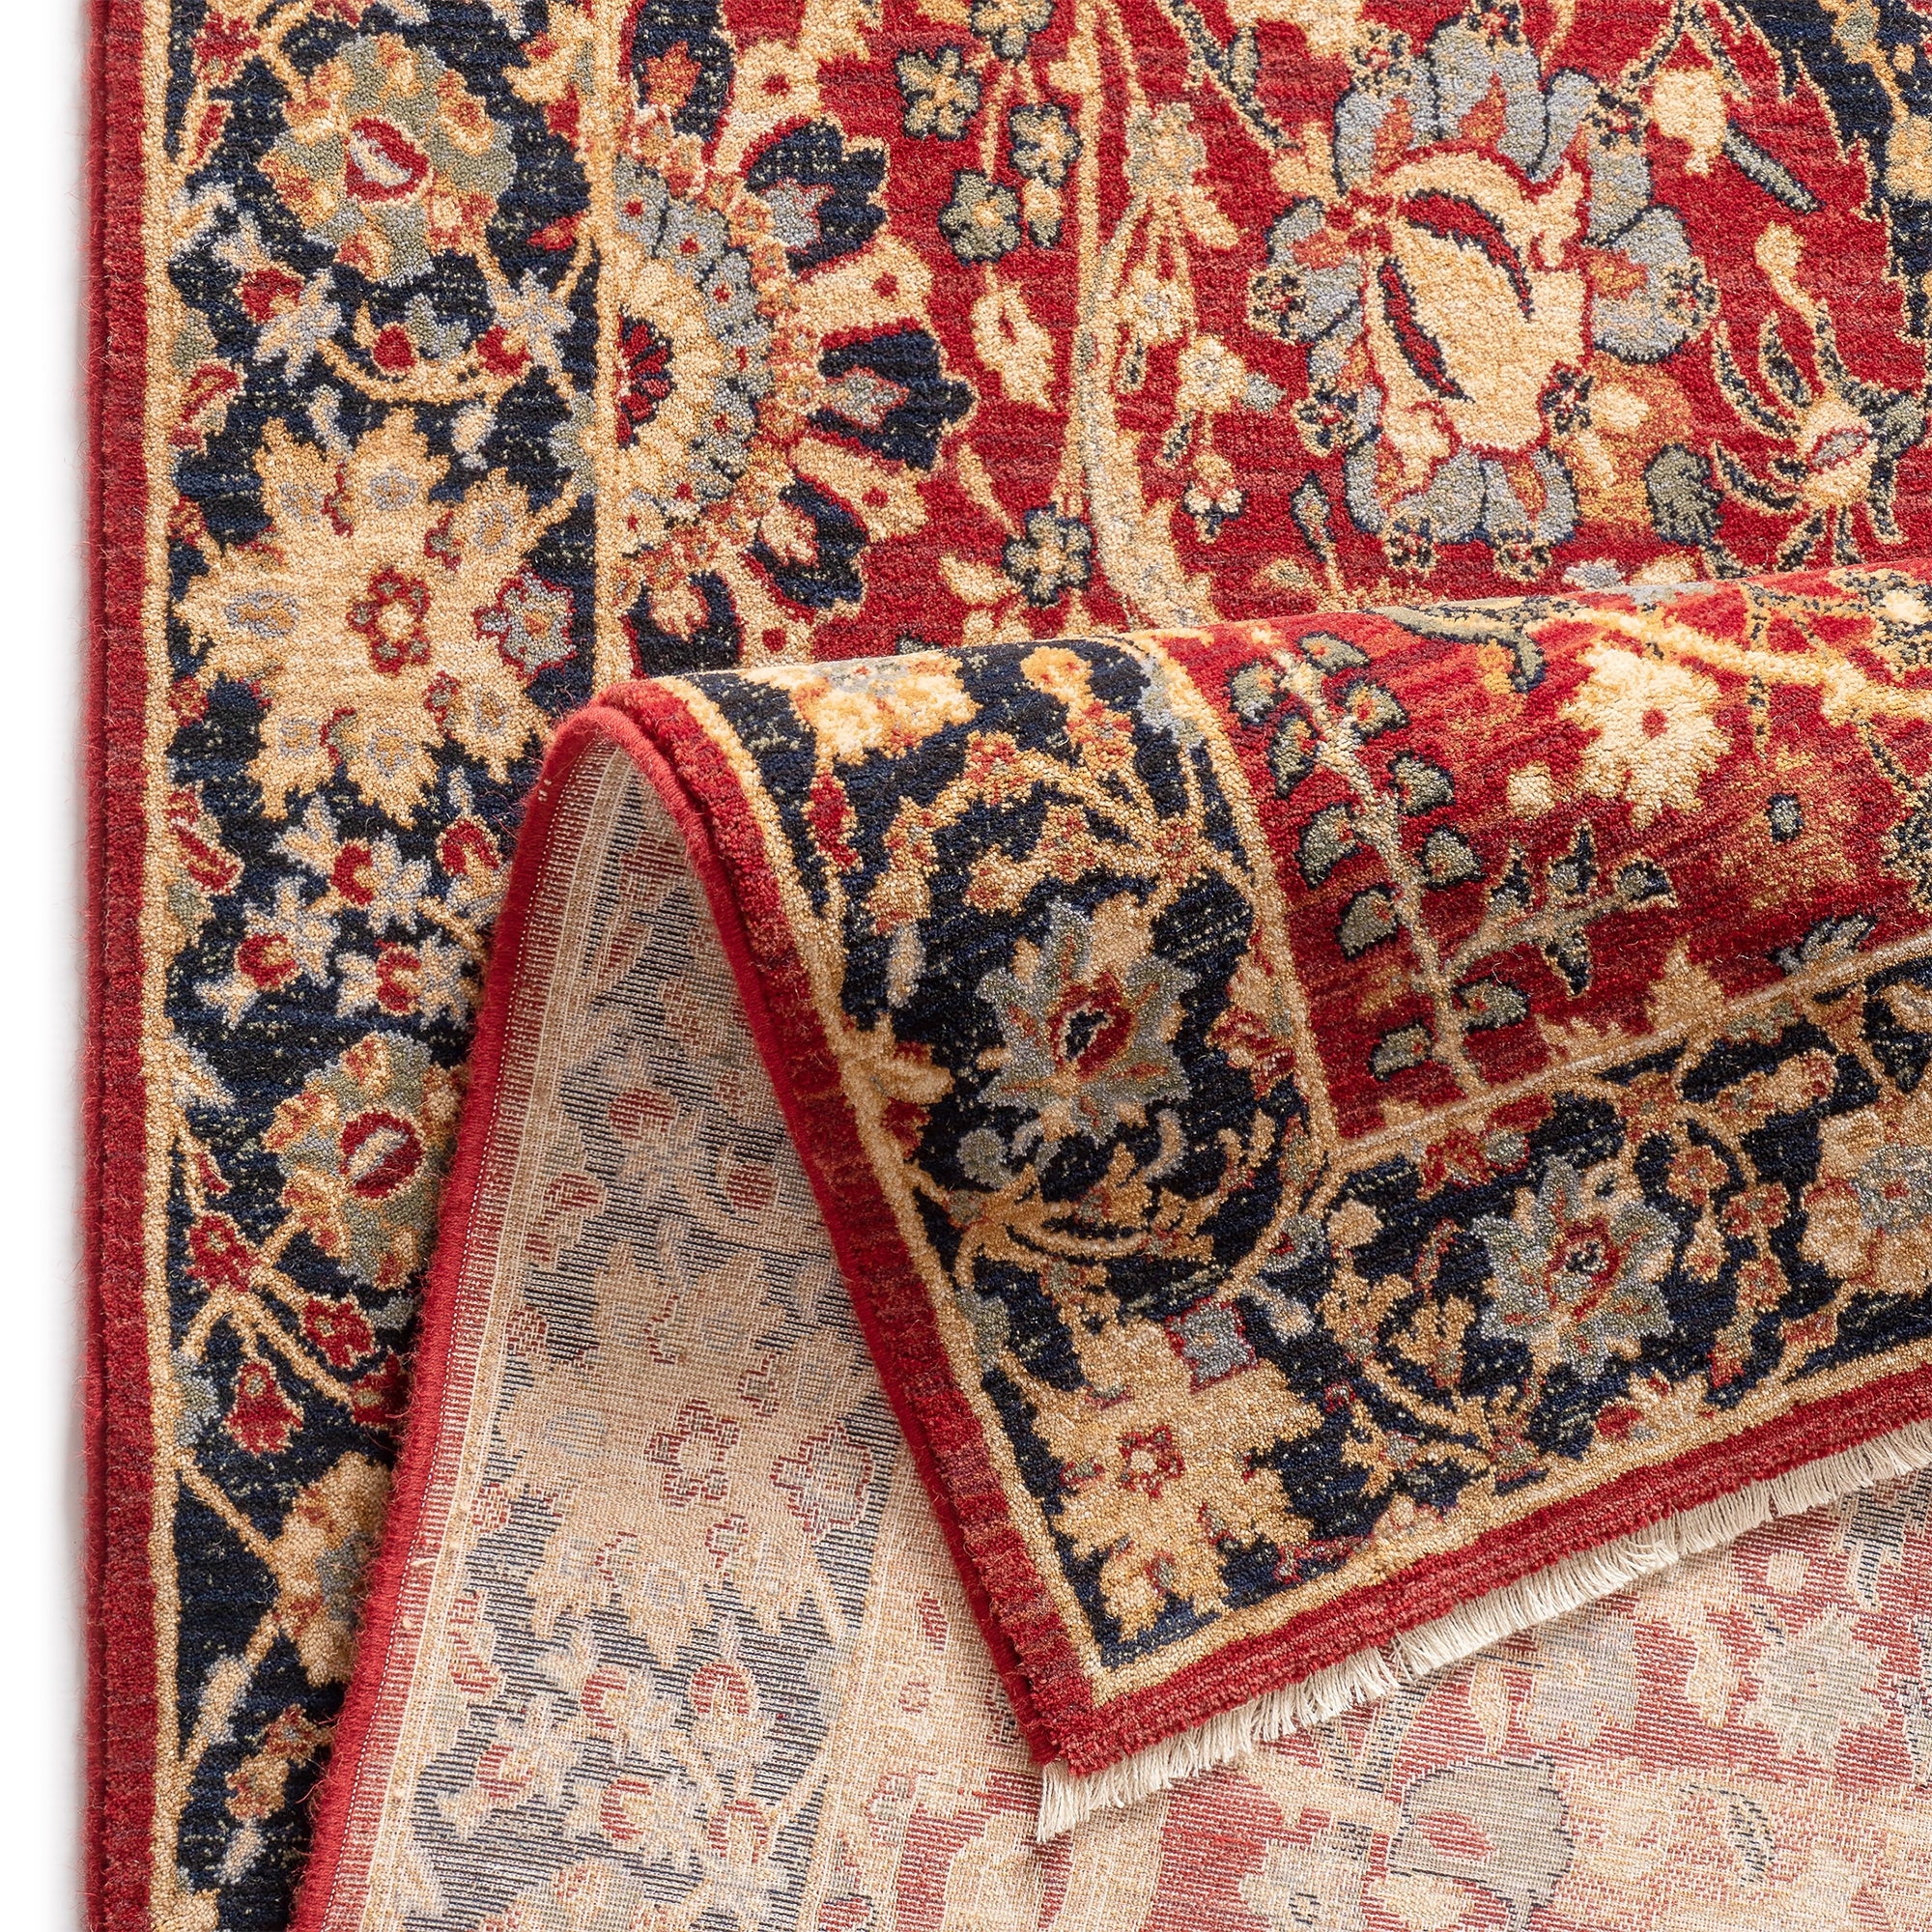 Covor living / dormitor Carpeta Antique 66501-53578, 80 x 145 cm, lana, rosu + bej + bleumarin + maro, dreptunghiular